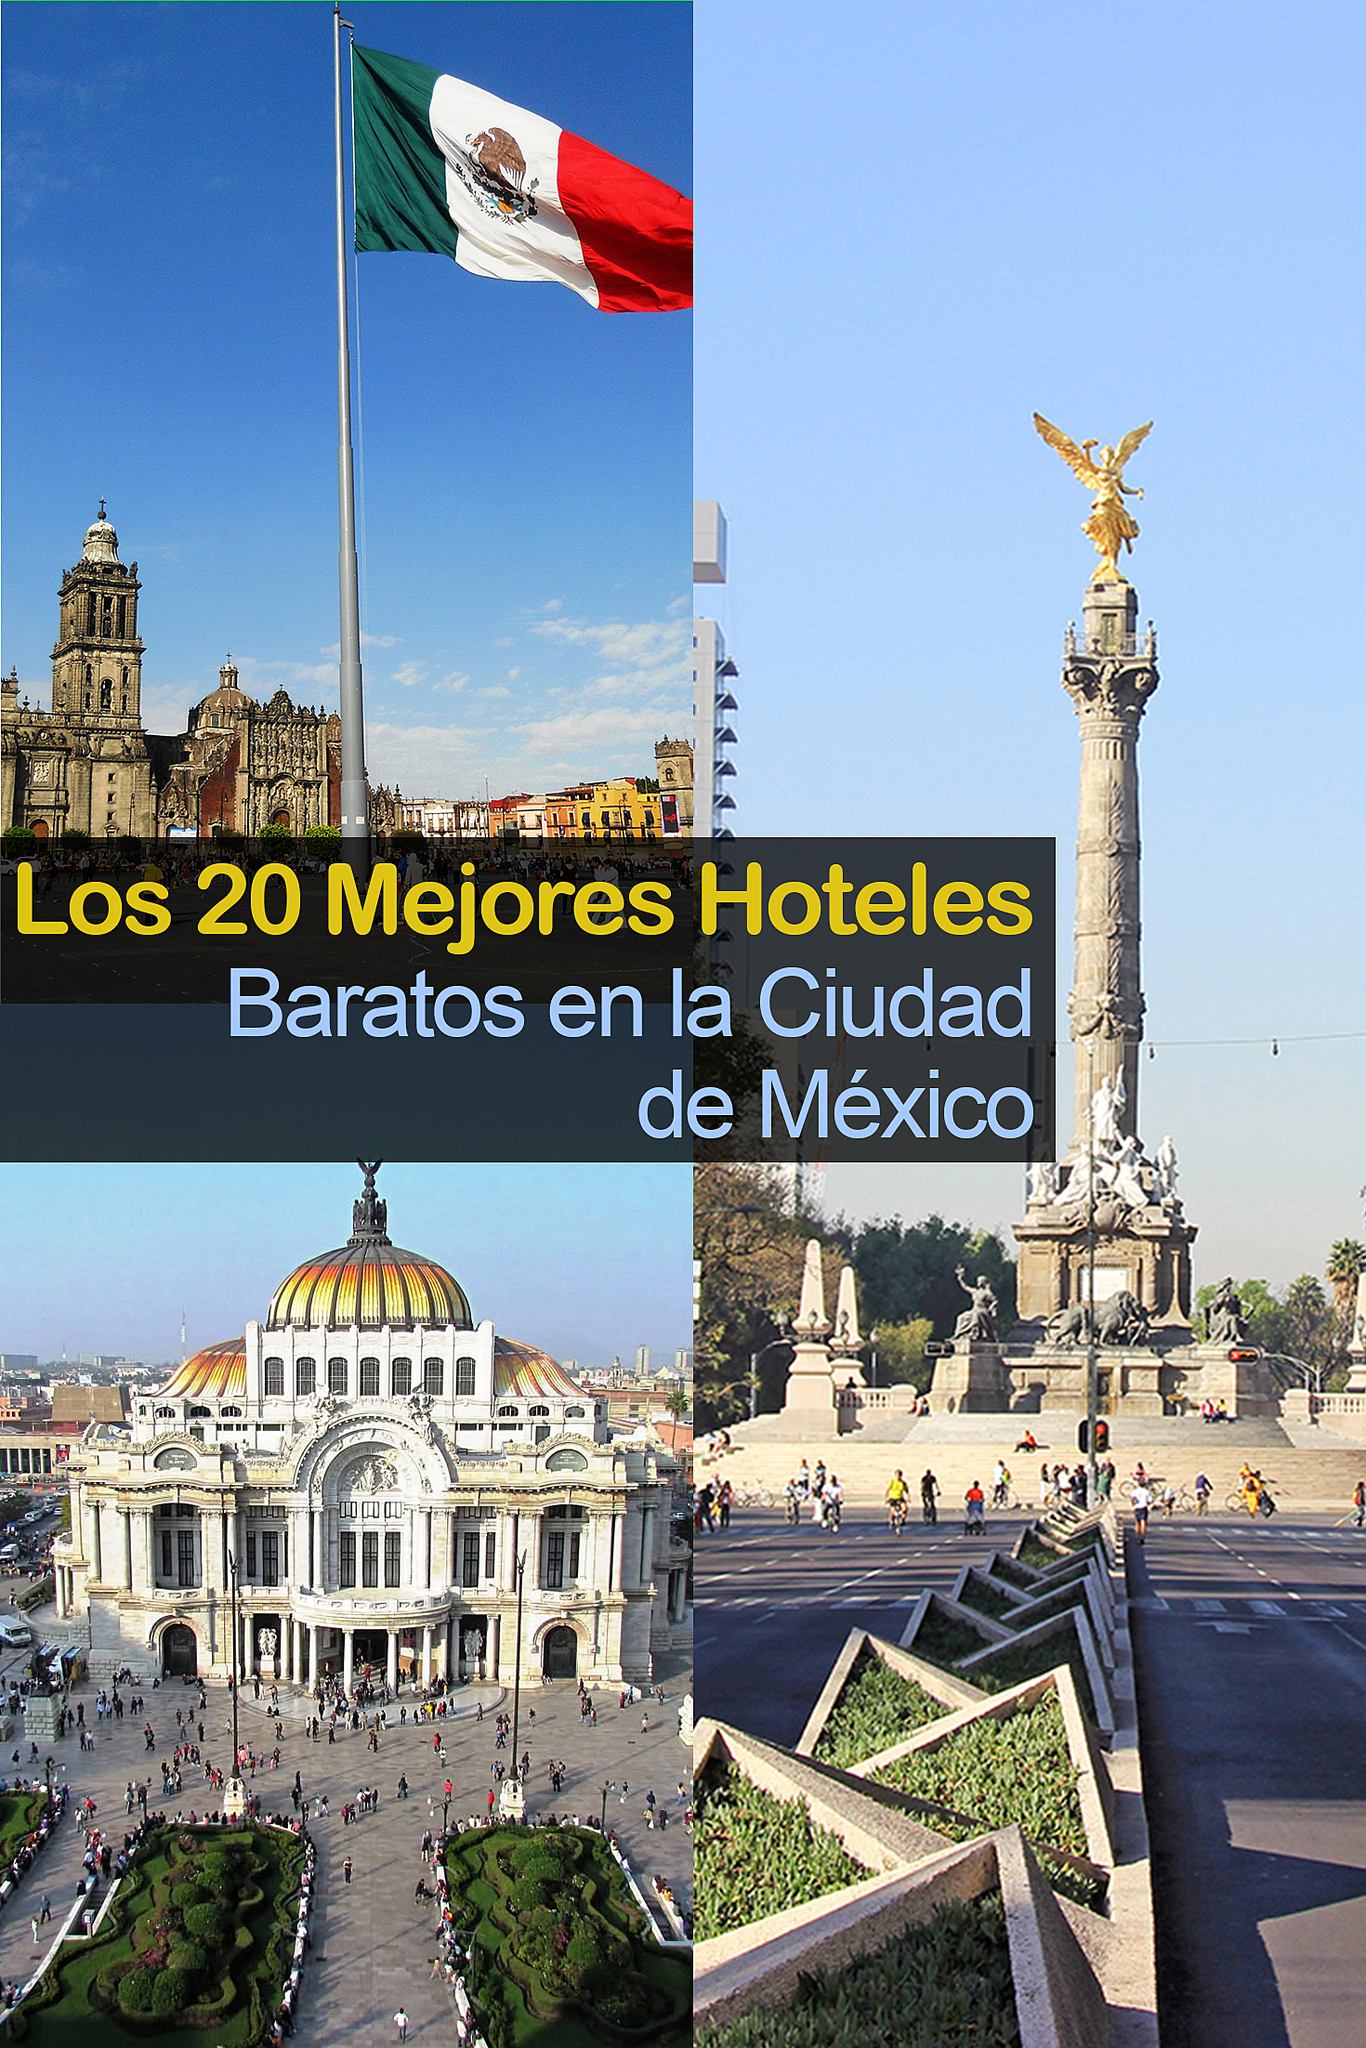 Los 20 Mejores Hoteles Baratos en la Ciudad de México - Tips Para Tu Viaje